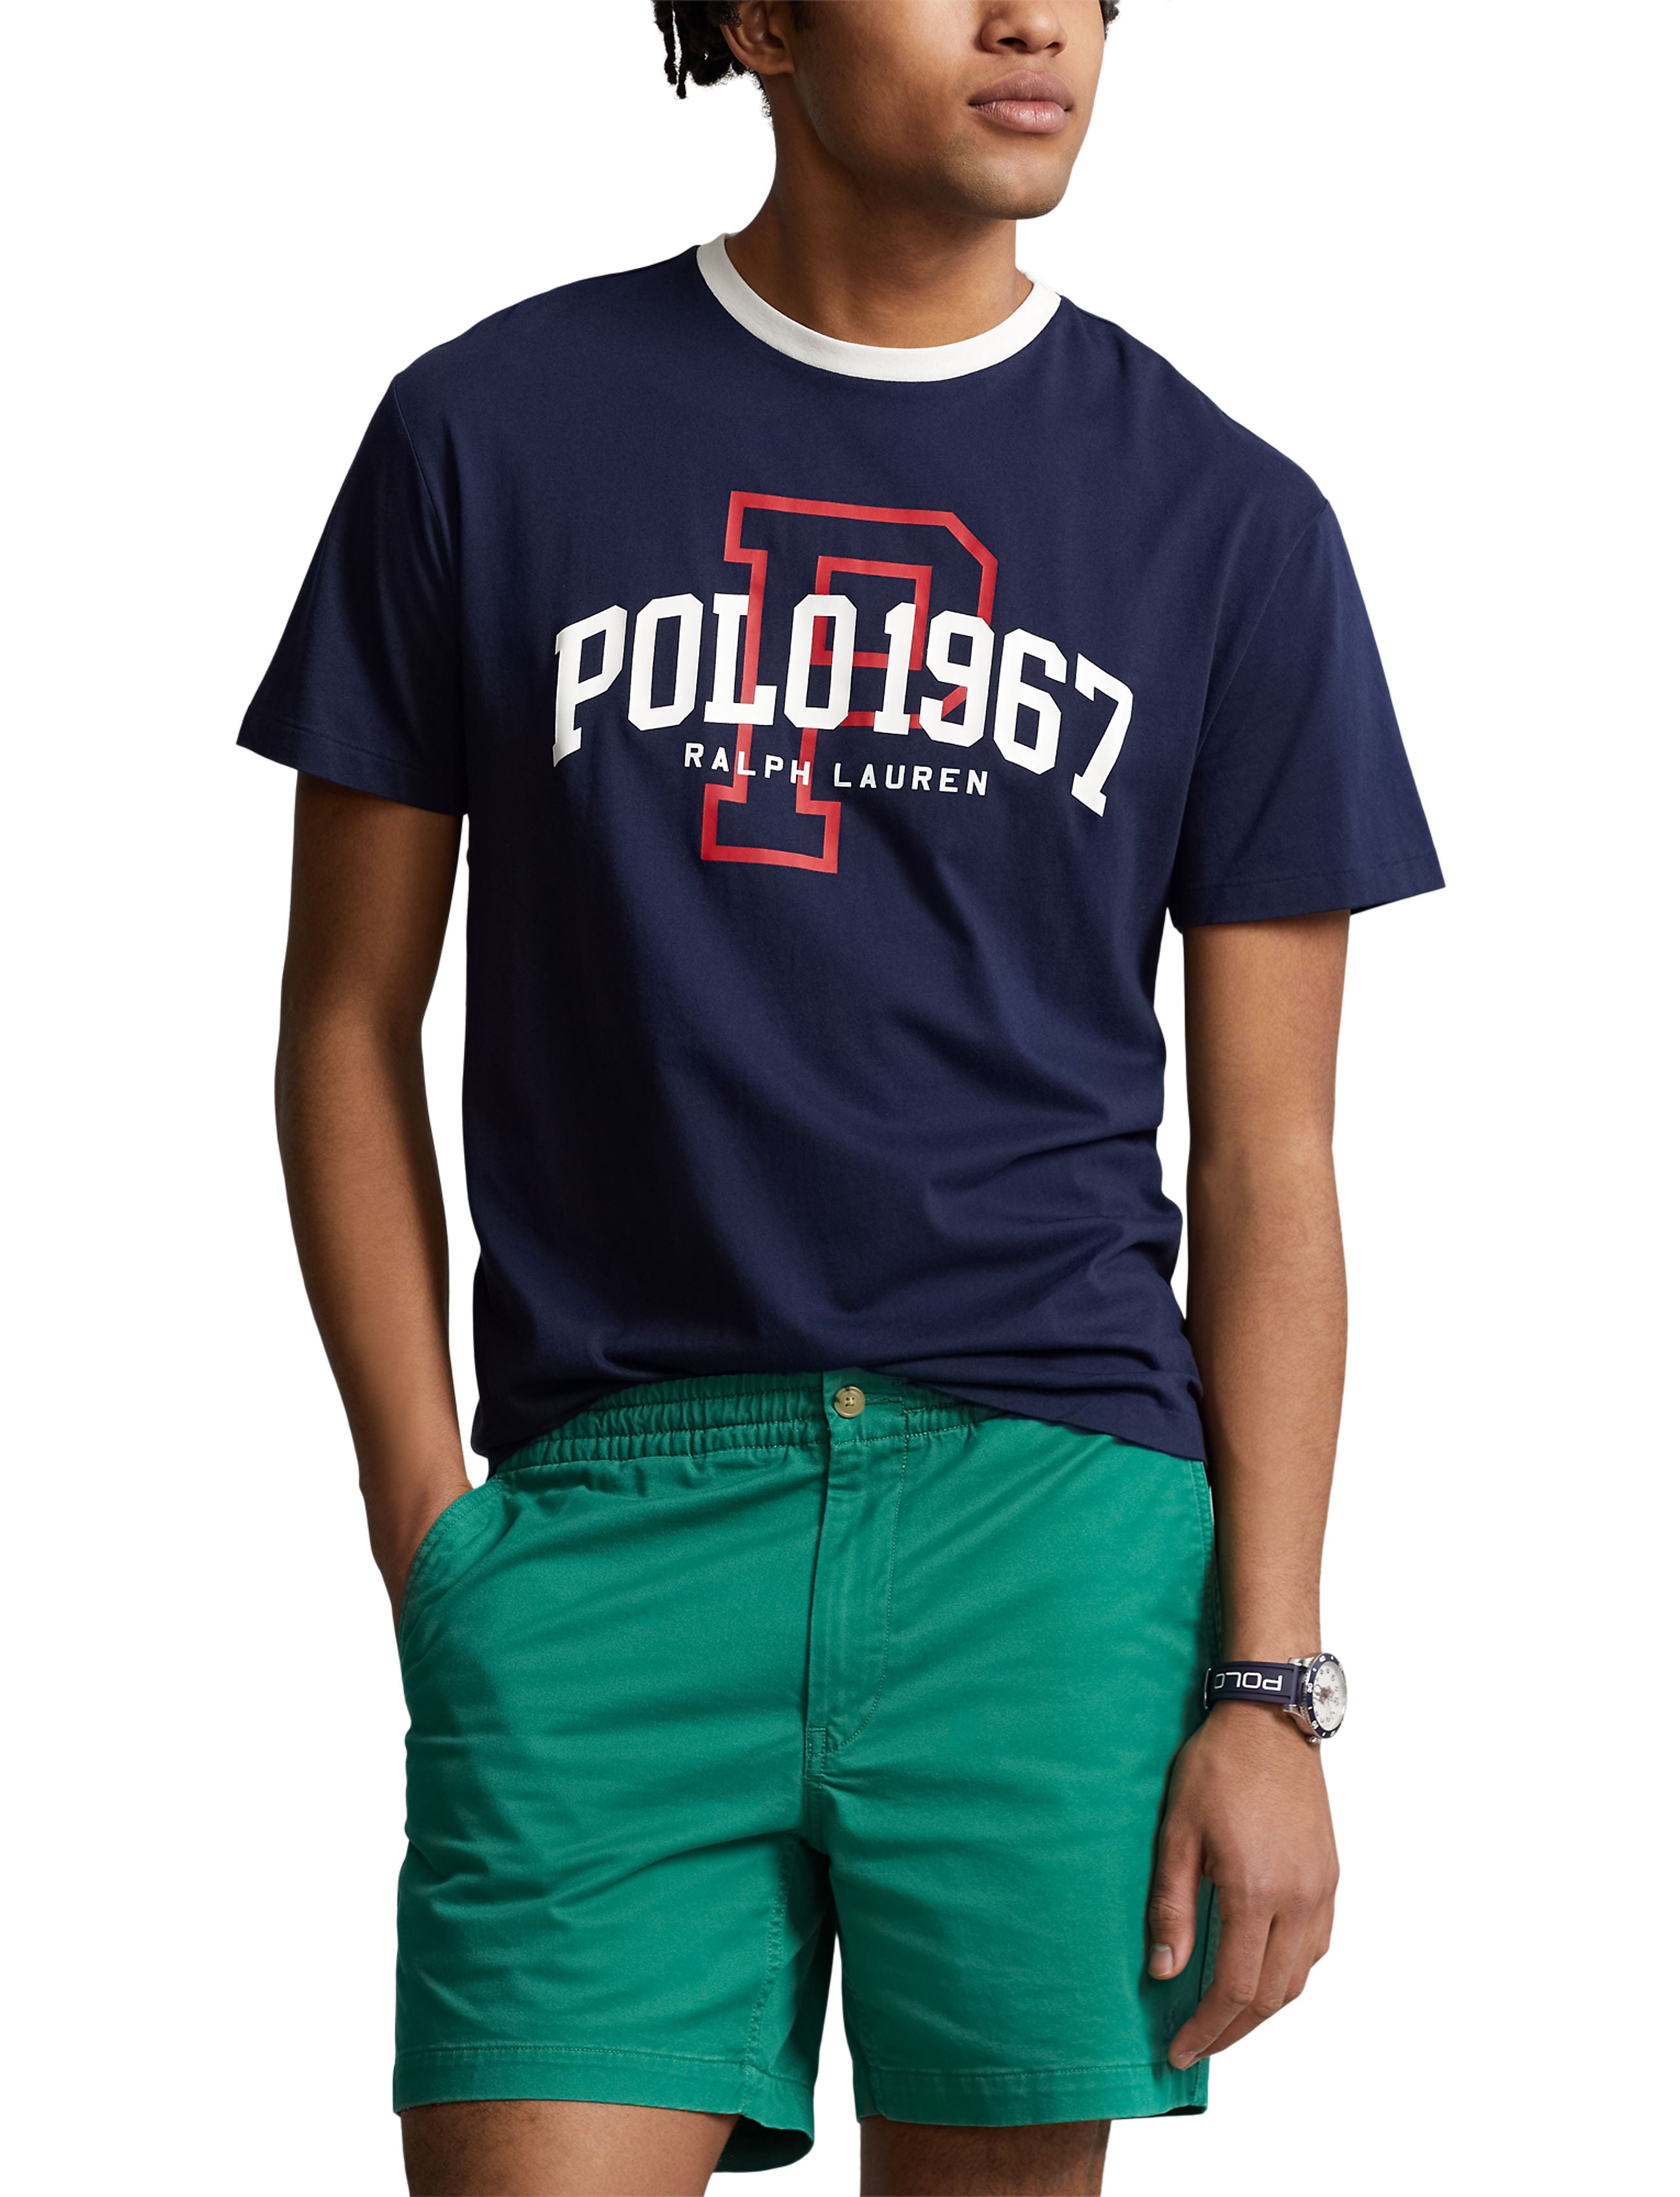 Polo Ralph Lauren Tee Shirt - Logo Jersey Tee Shirt